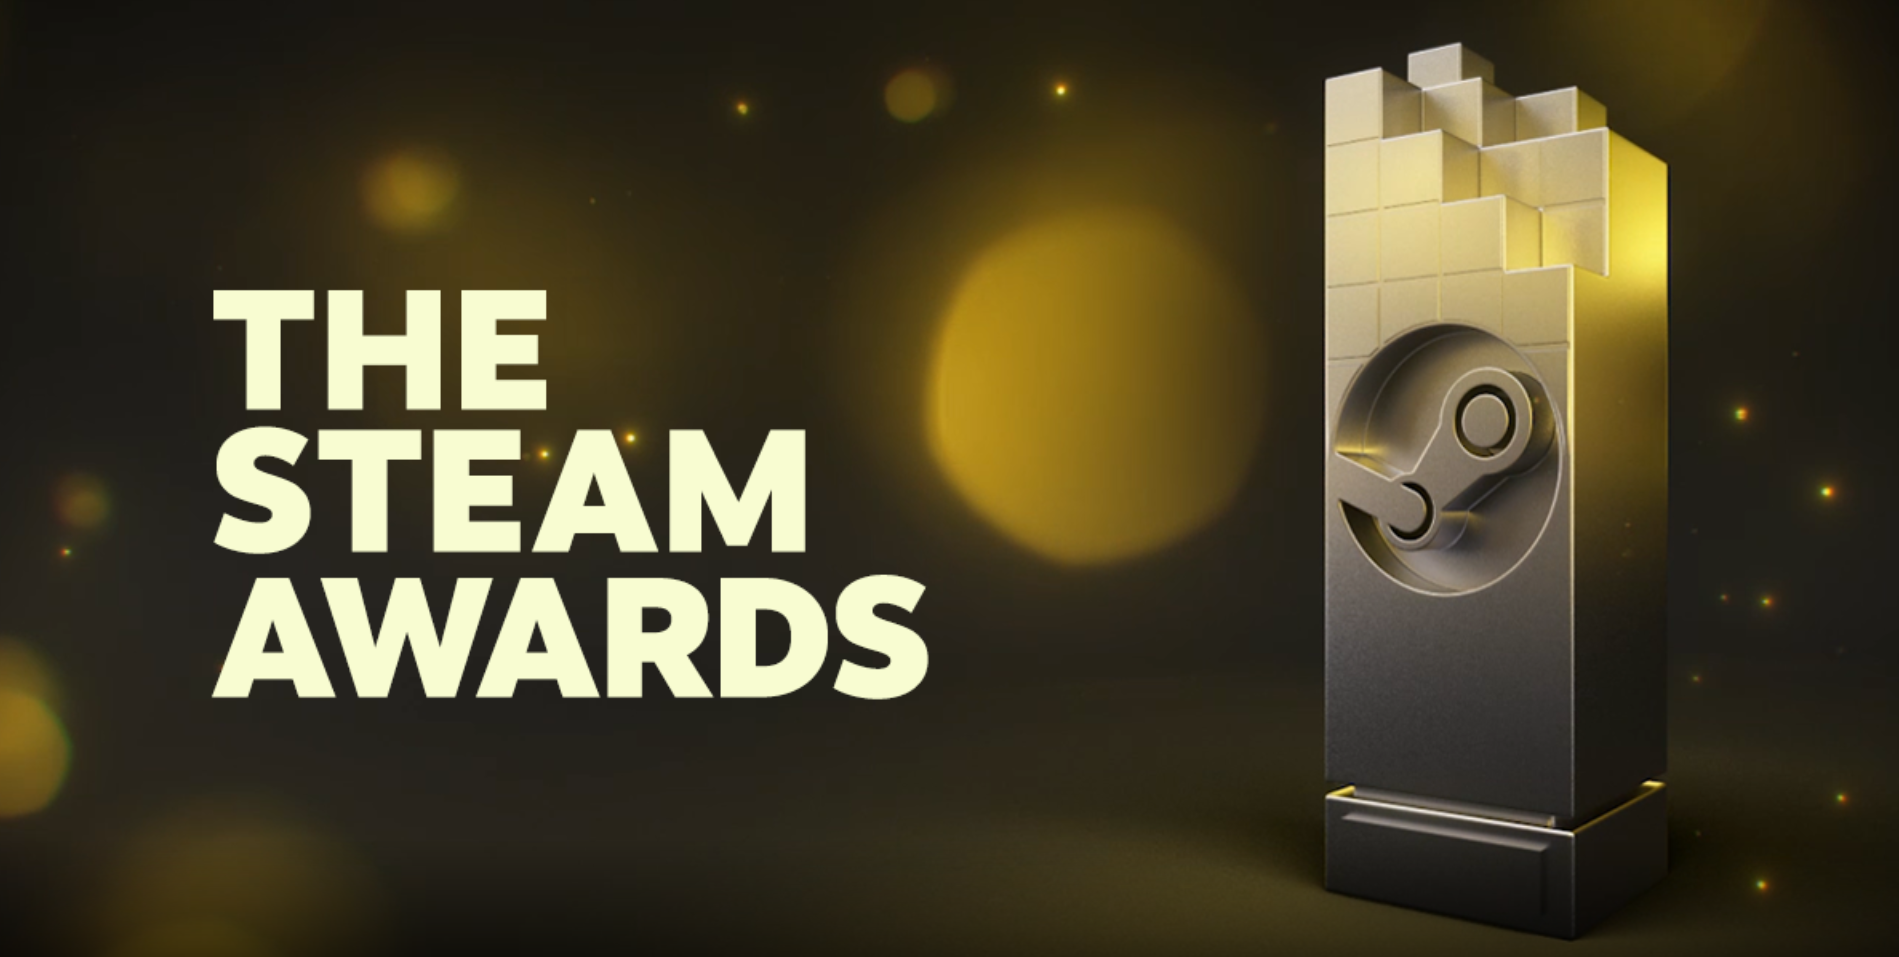 বাষ্প পুরষ্কার 2020 বিজয়ীদের ঘোষণা, রেড ডেড রিডিম্পশন 2 একাধিক পুরষ্কার জিতেছে